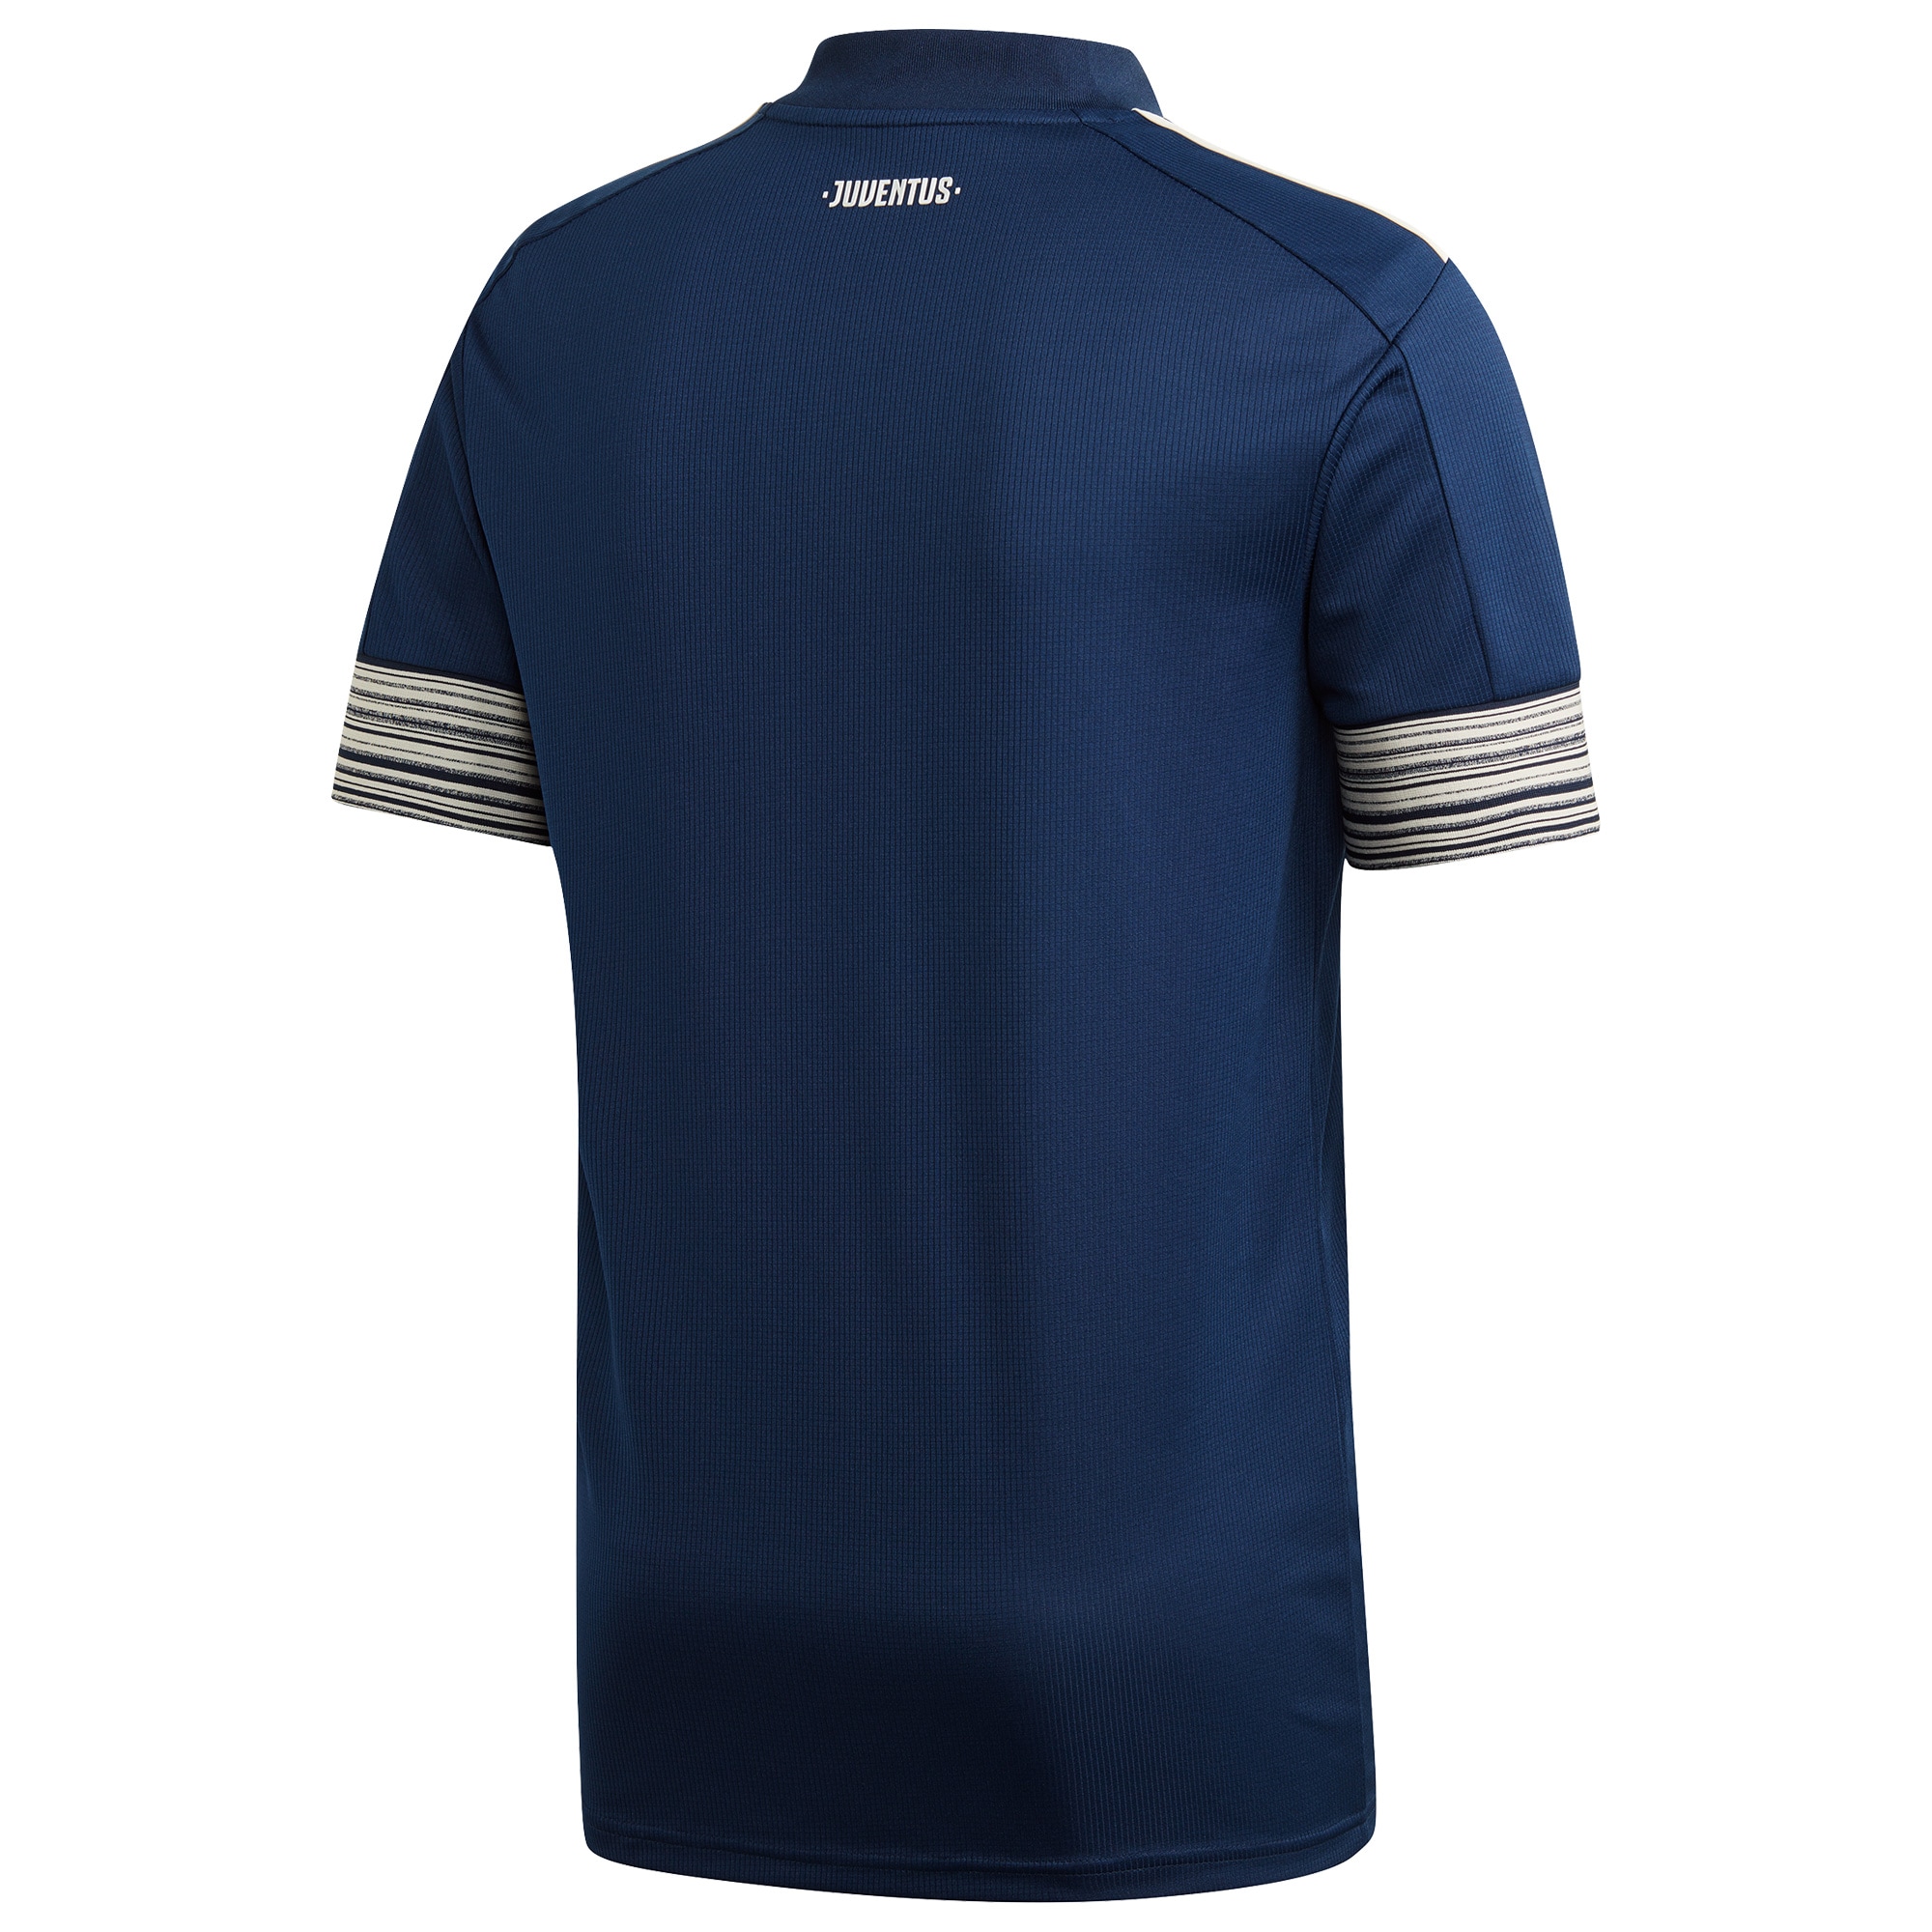 Men's Juventus Jerseys Blue 2020/21 Away Printed Style